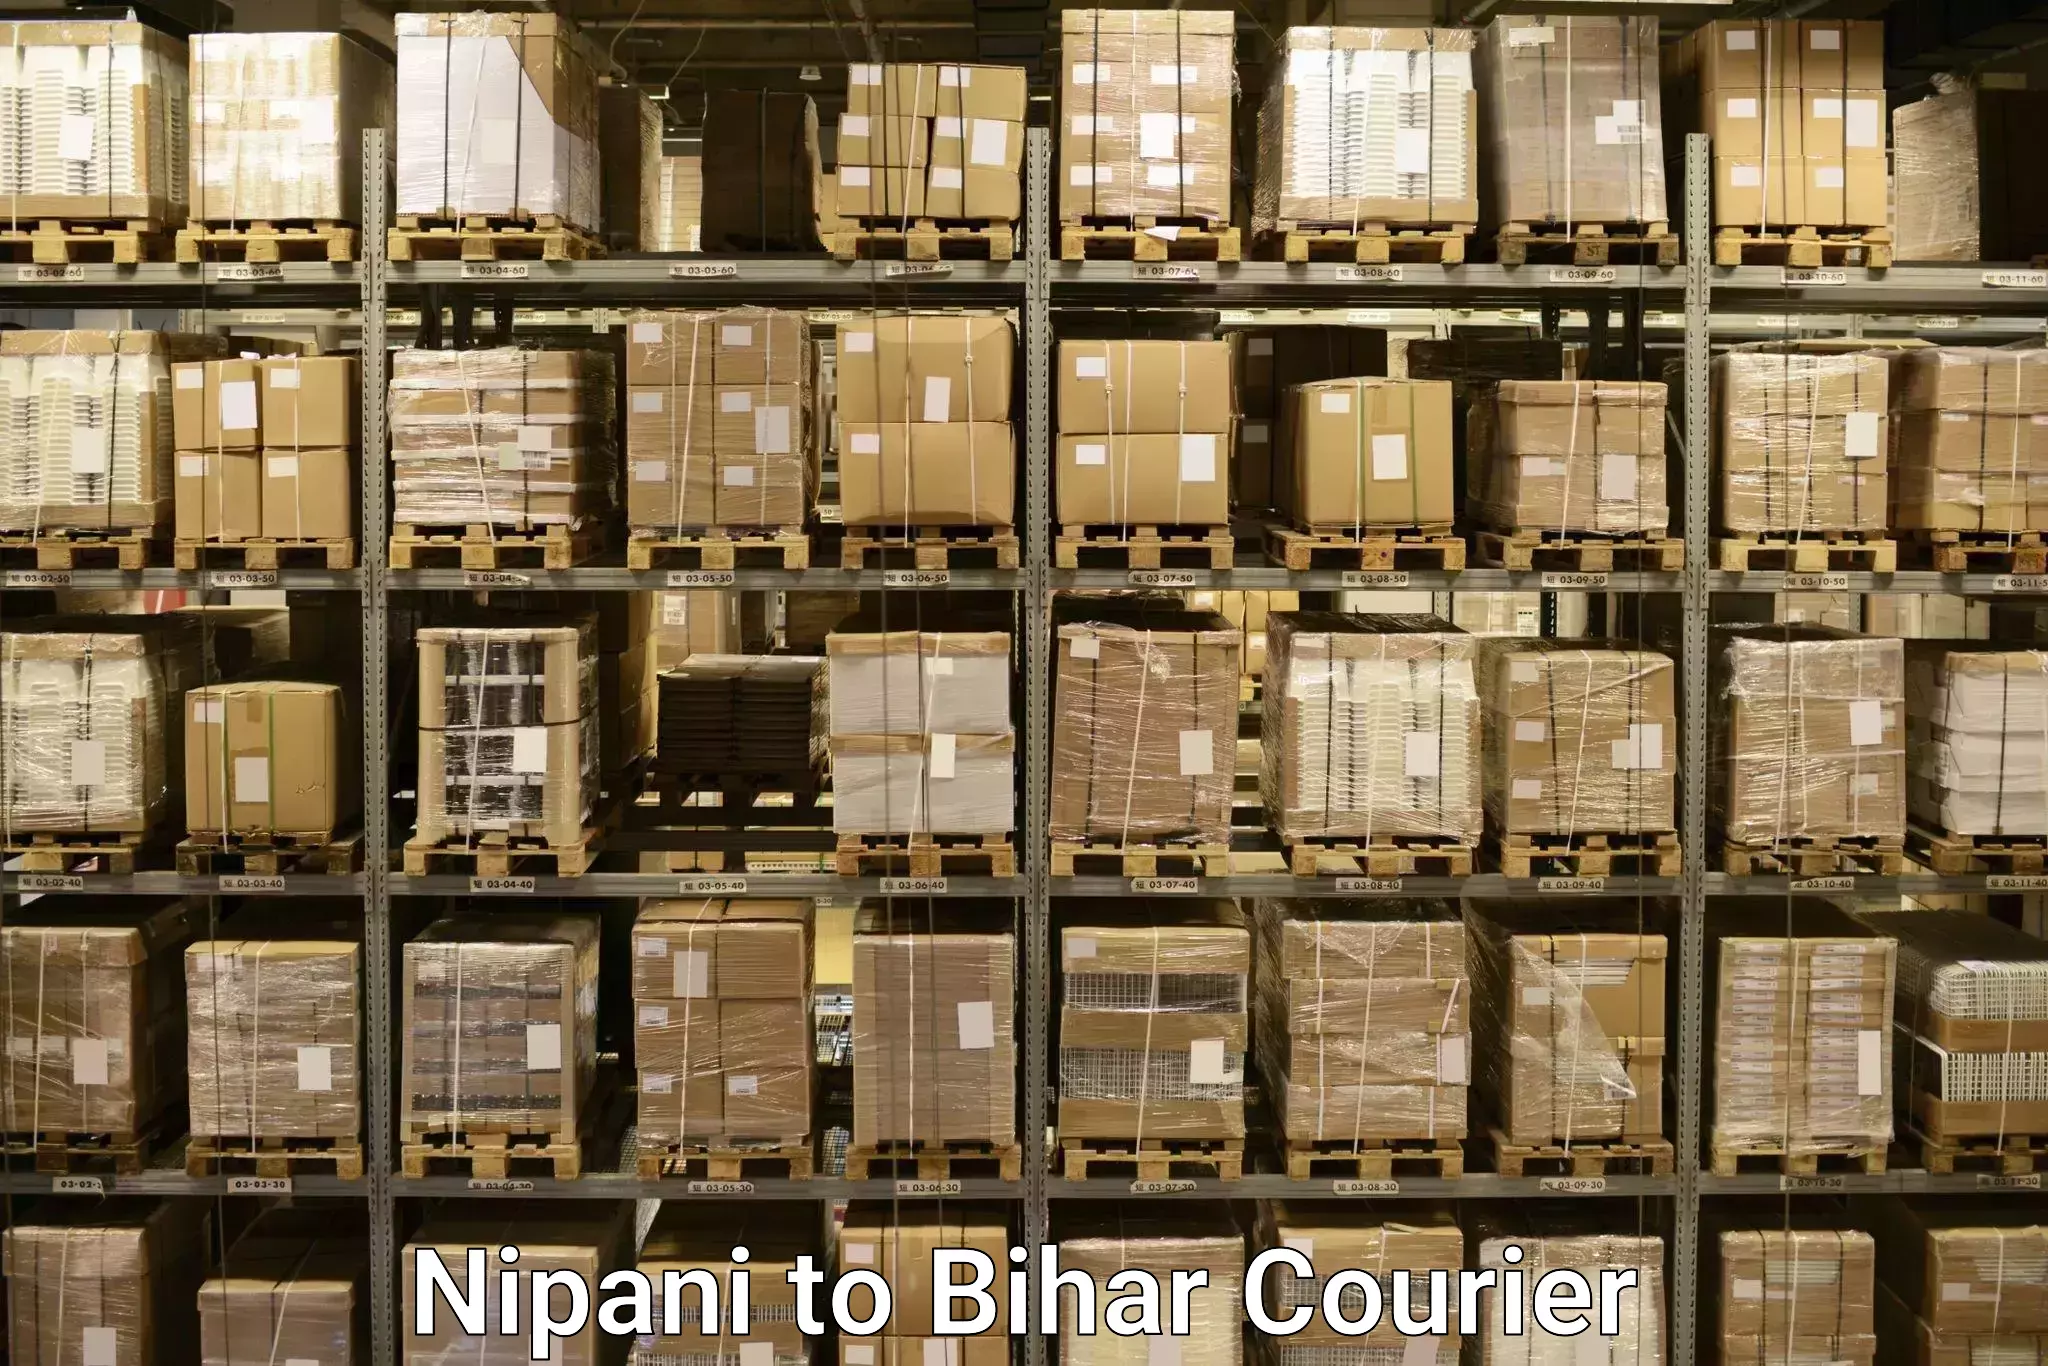 Luggage dispatch service Nipani to Vaishali